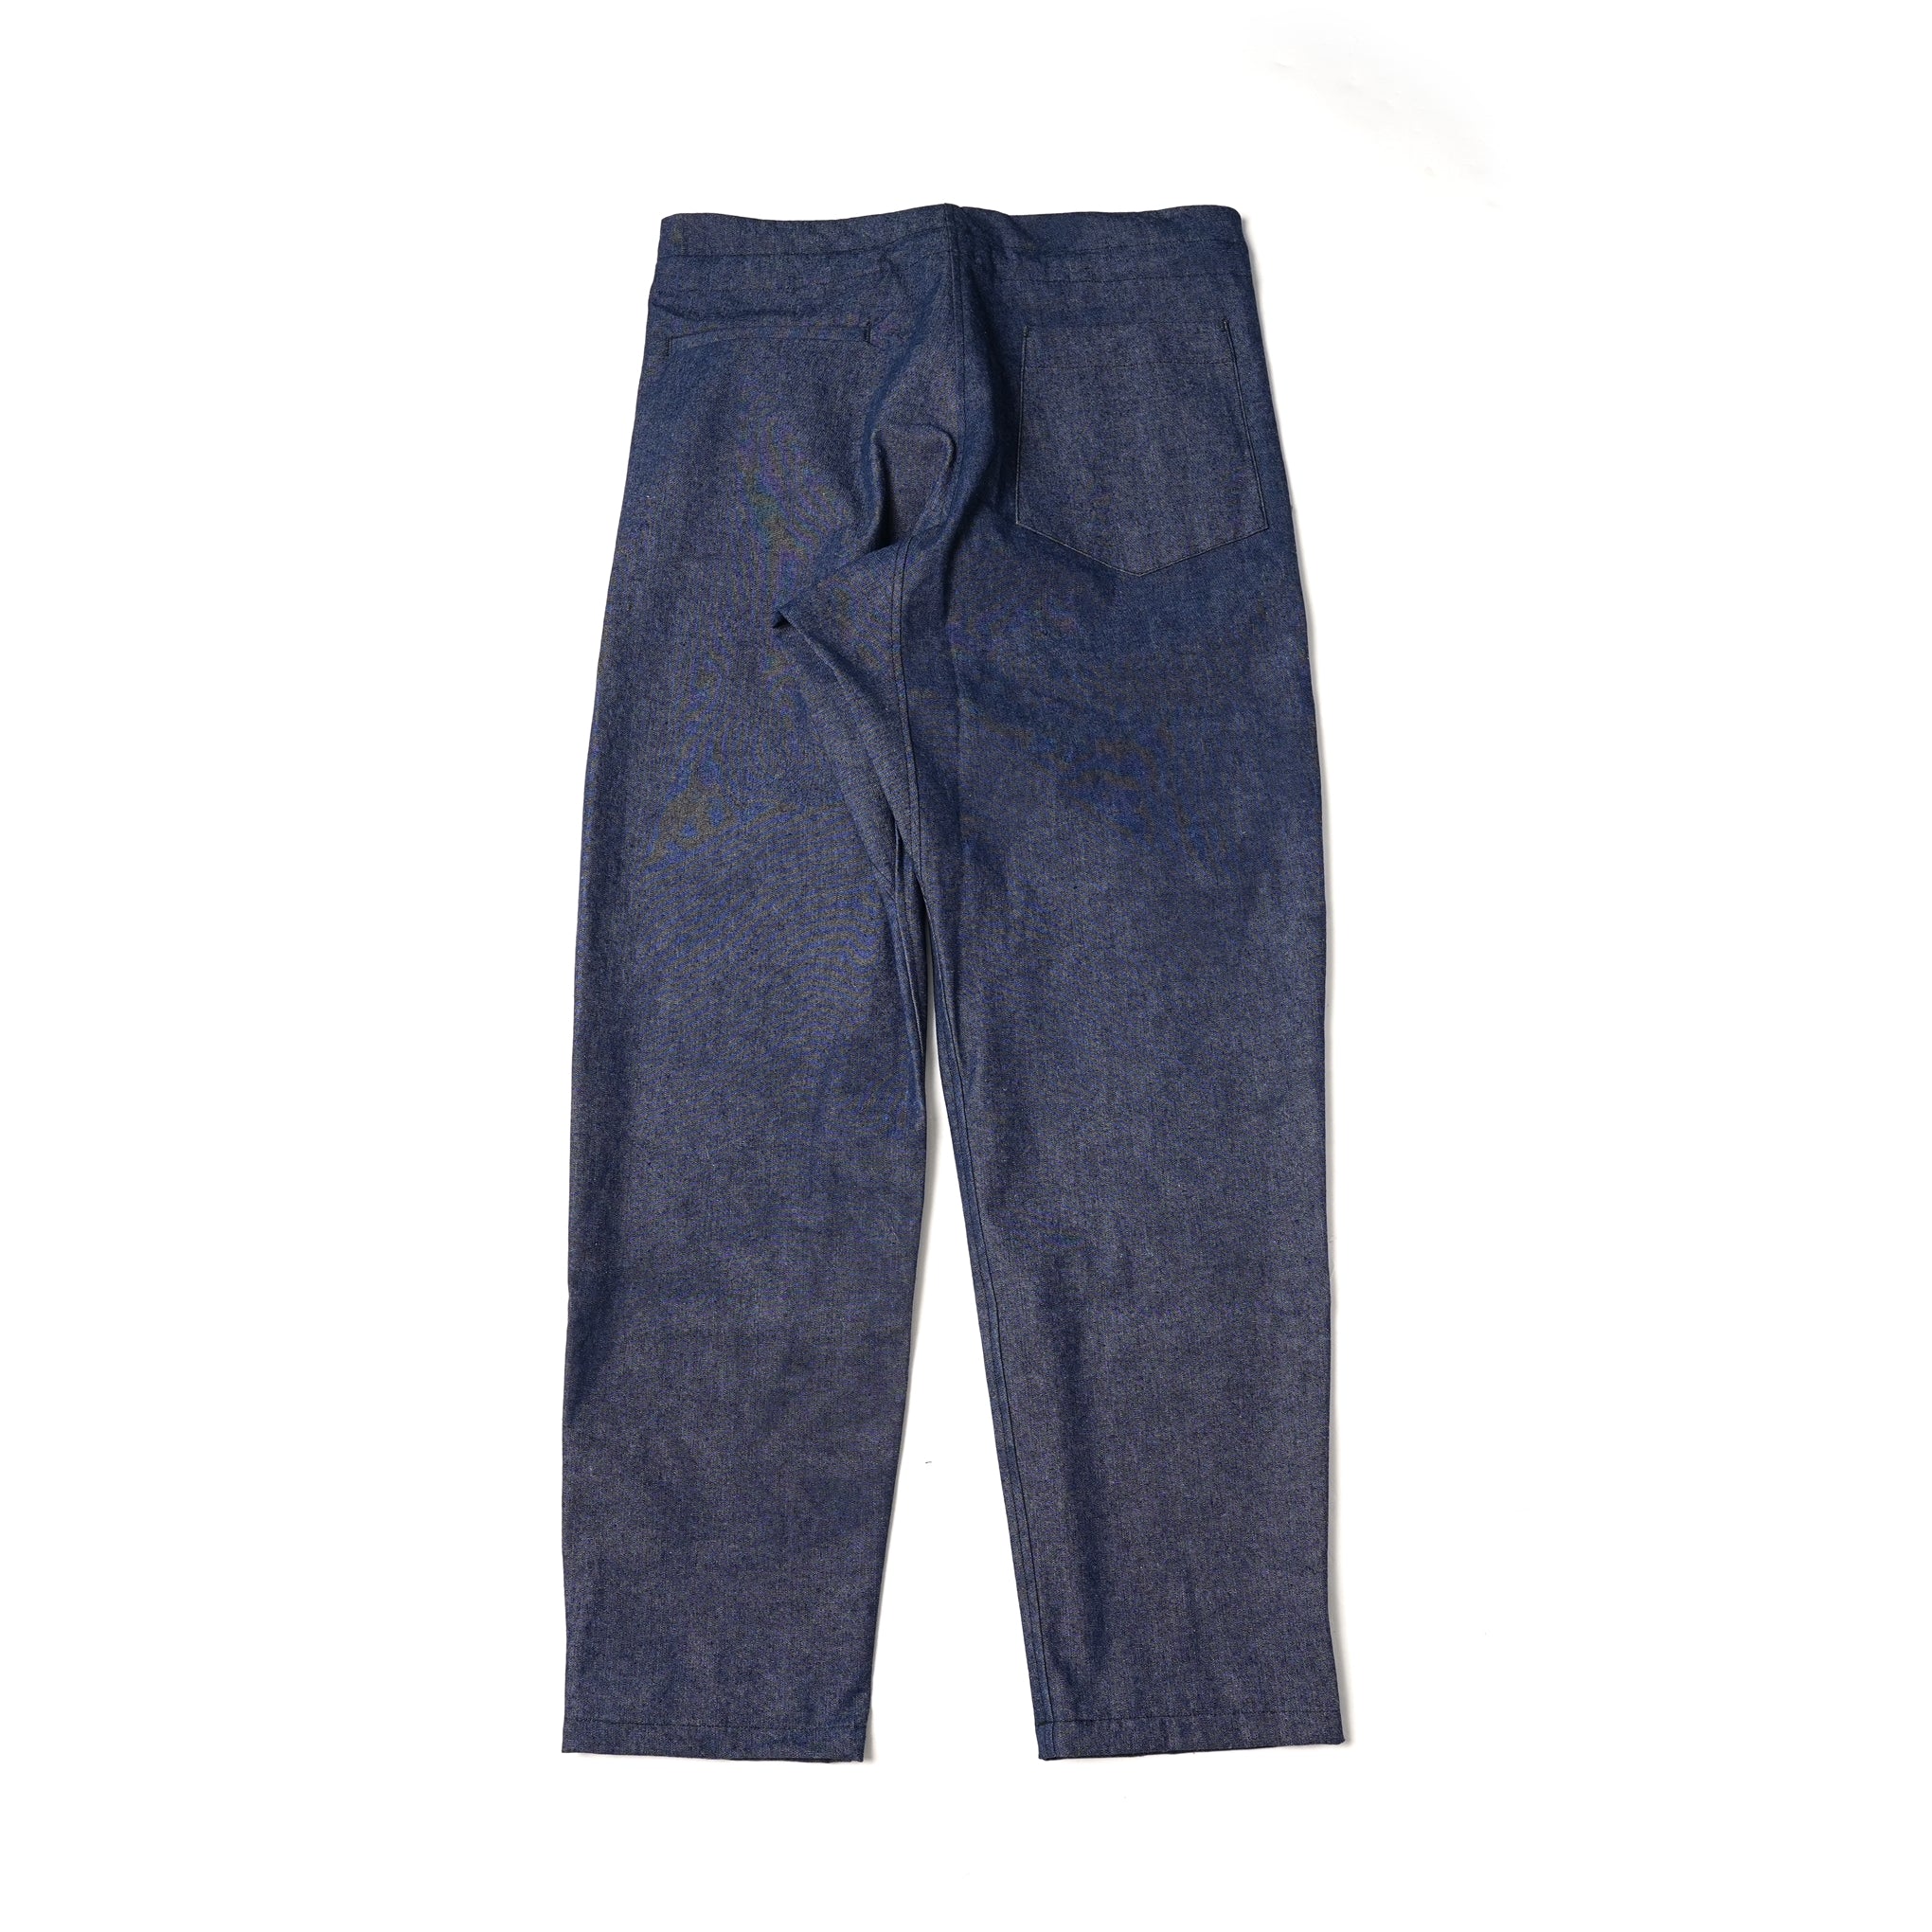 No:M31305-24 | Name:Drop Crotch Pants | Color:Chambray【MONITALY_モニタリー】